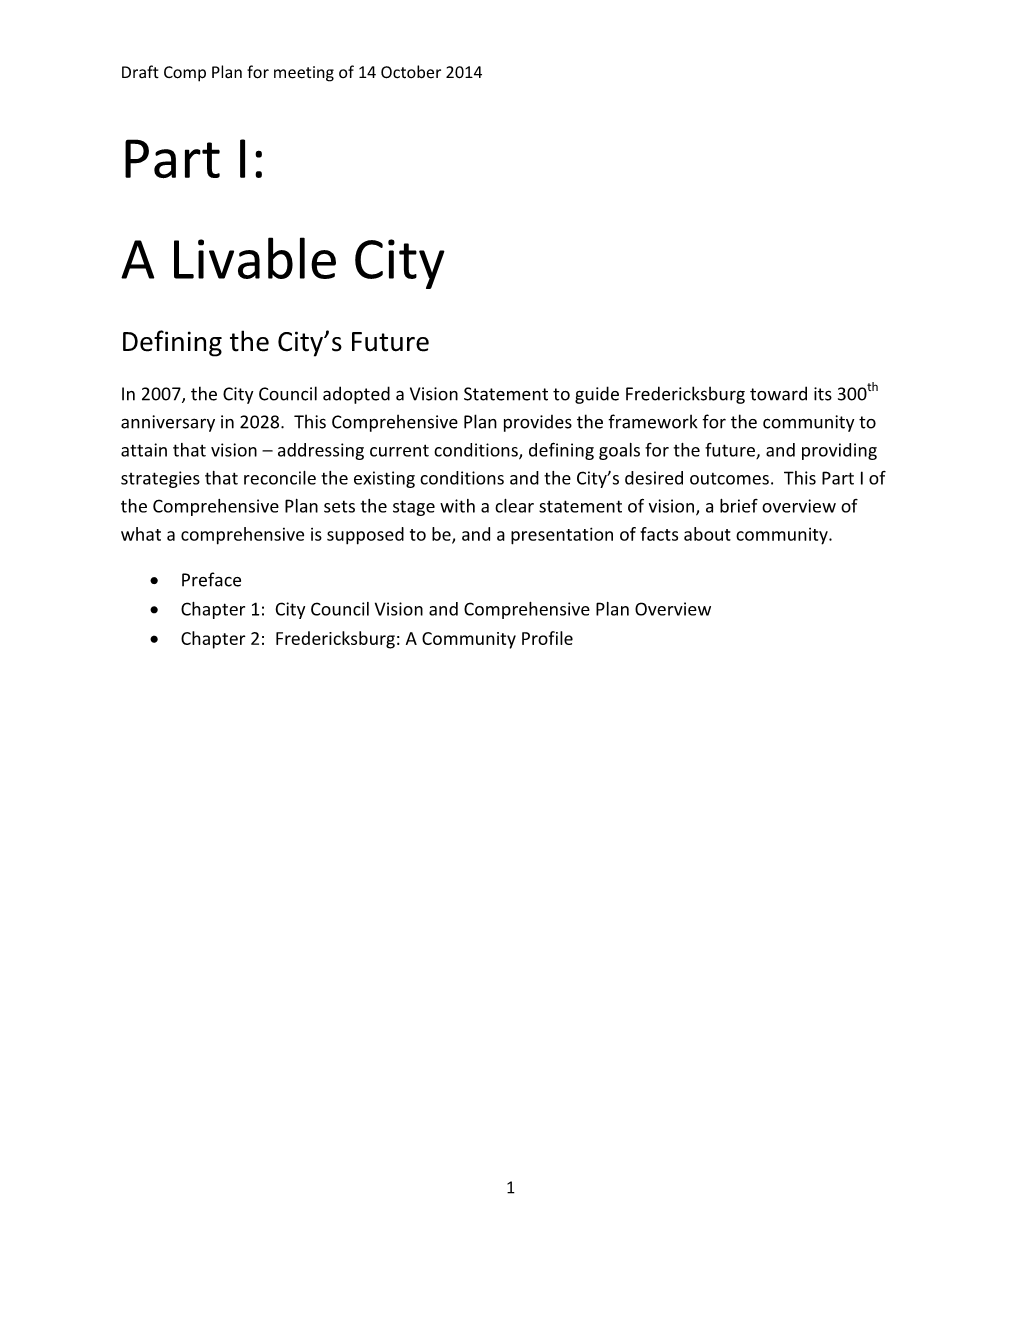 Part I: a Livable City